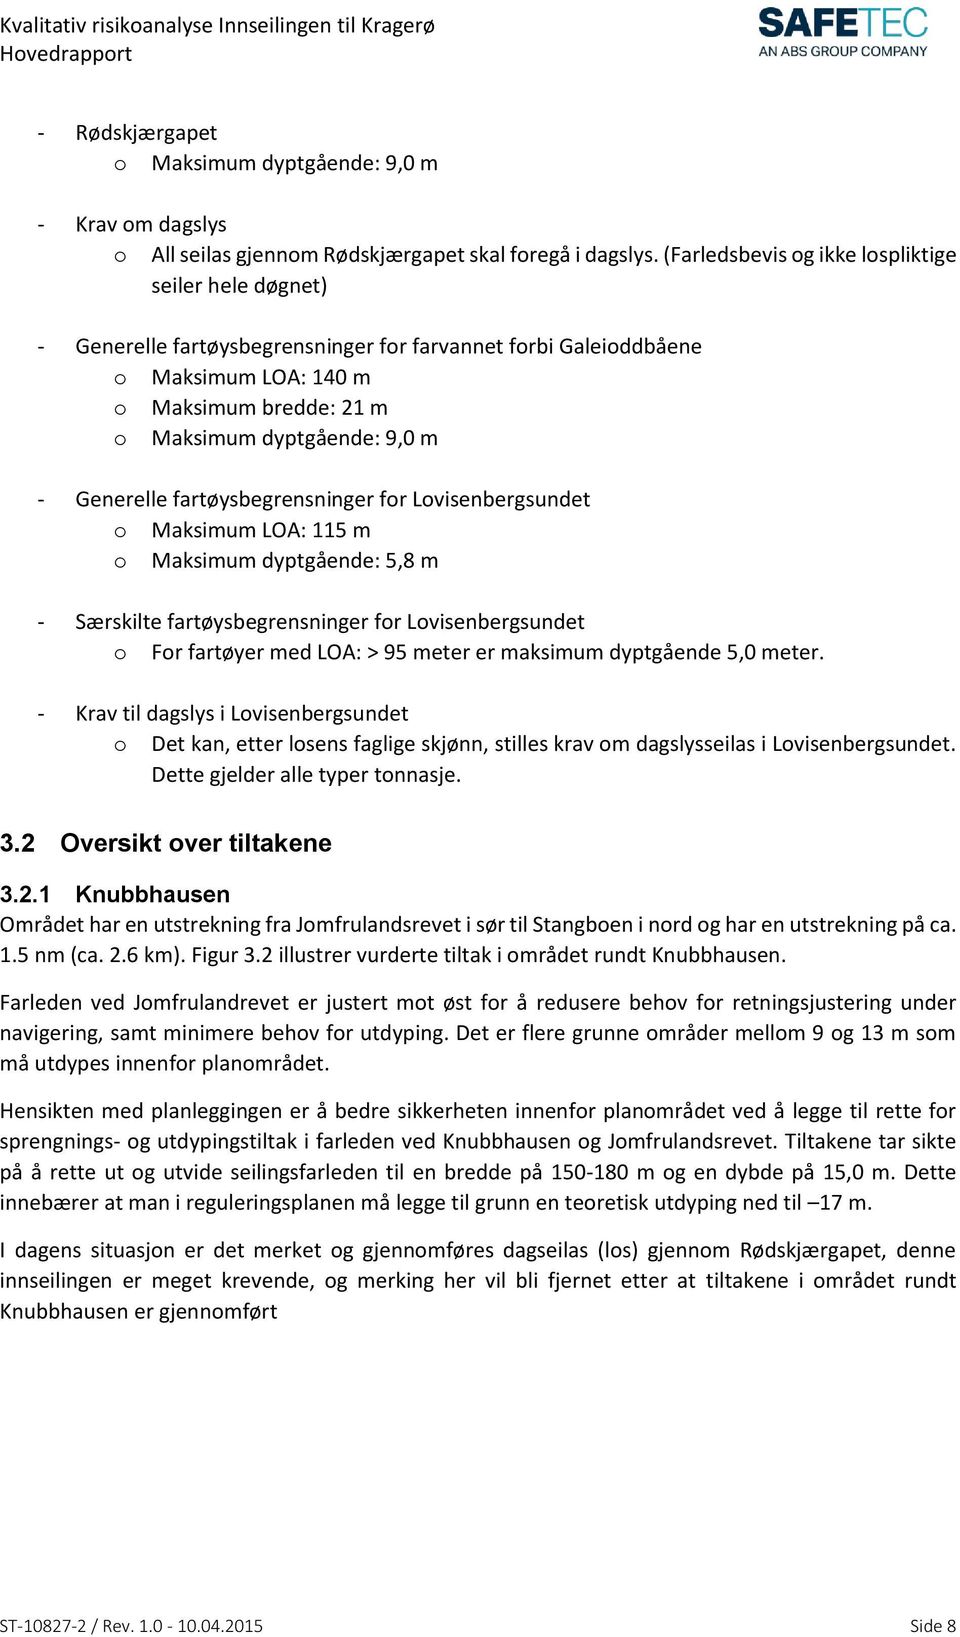 Generelle fartøysbegrensninger for Lovisenbergsundet o Maksimum LOA: 115 m o Maksimum dyptgående: 5,8 m - Særskilte fartøysbegrensninger for Lovisenbergsundet o For fartøyer med LOA: > 95 meter er